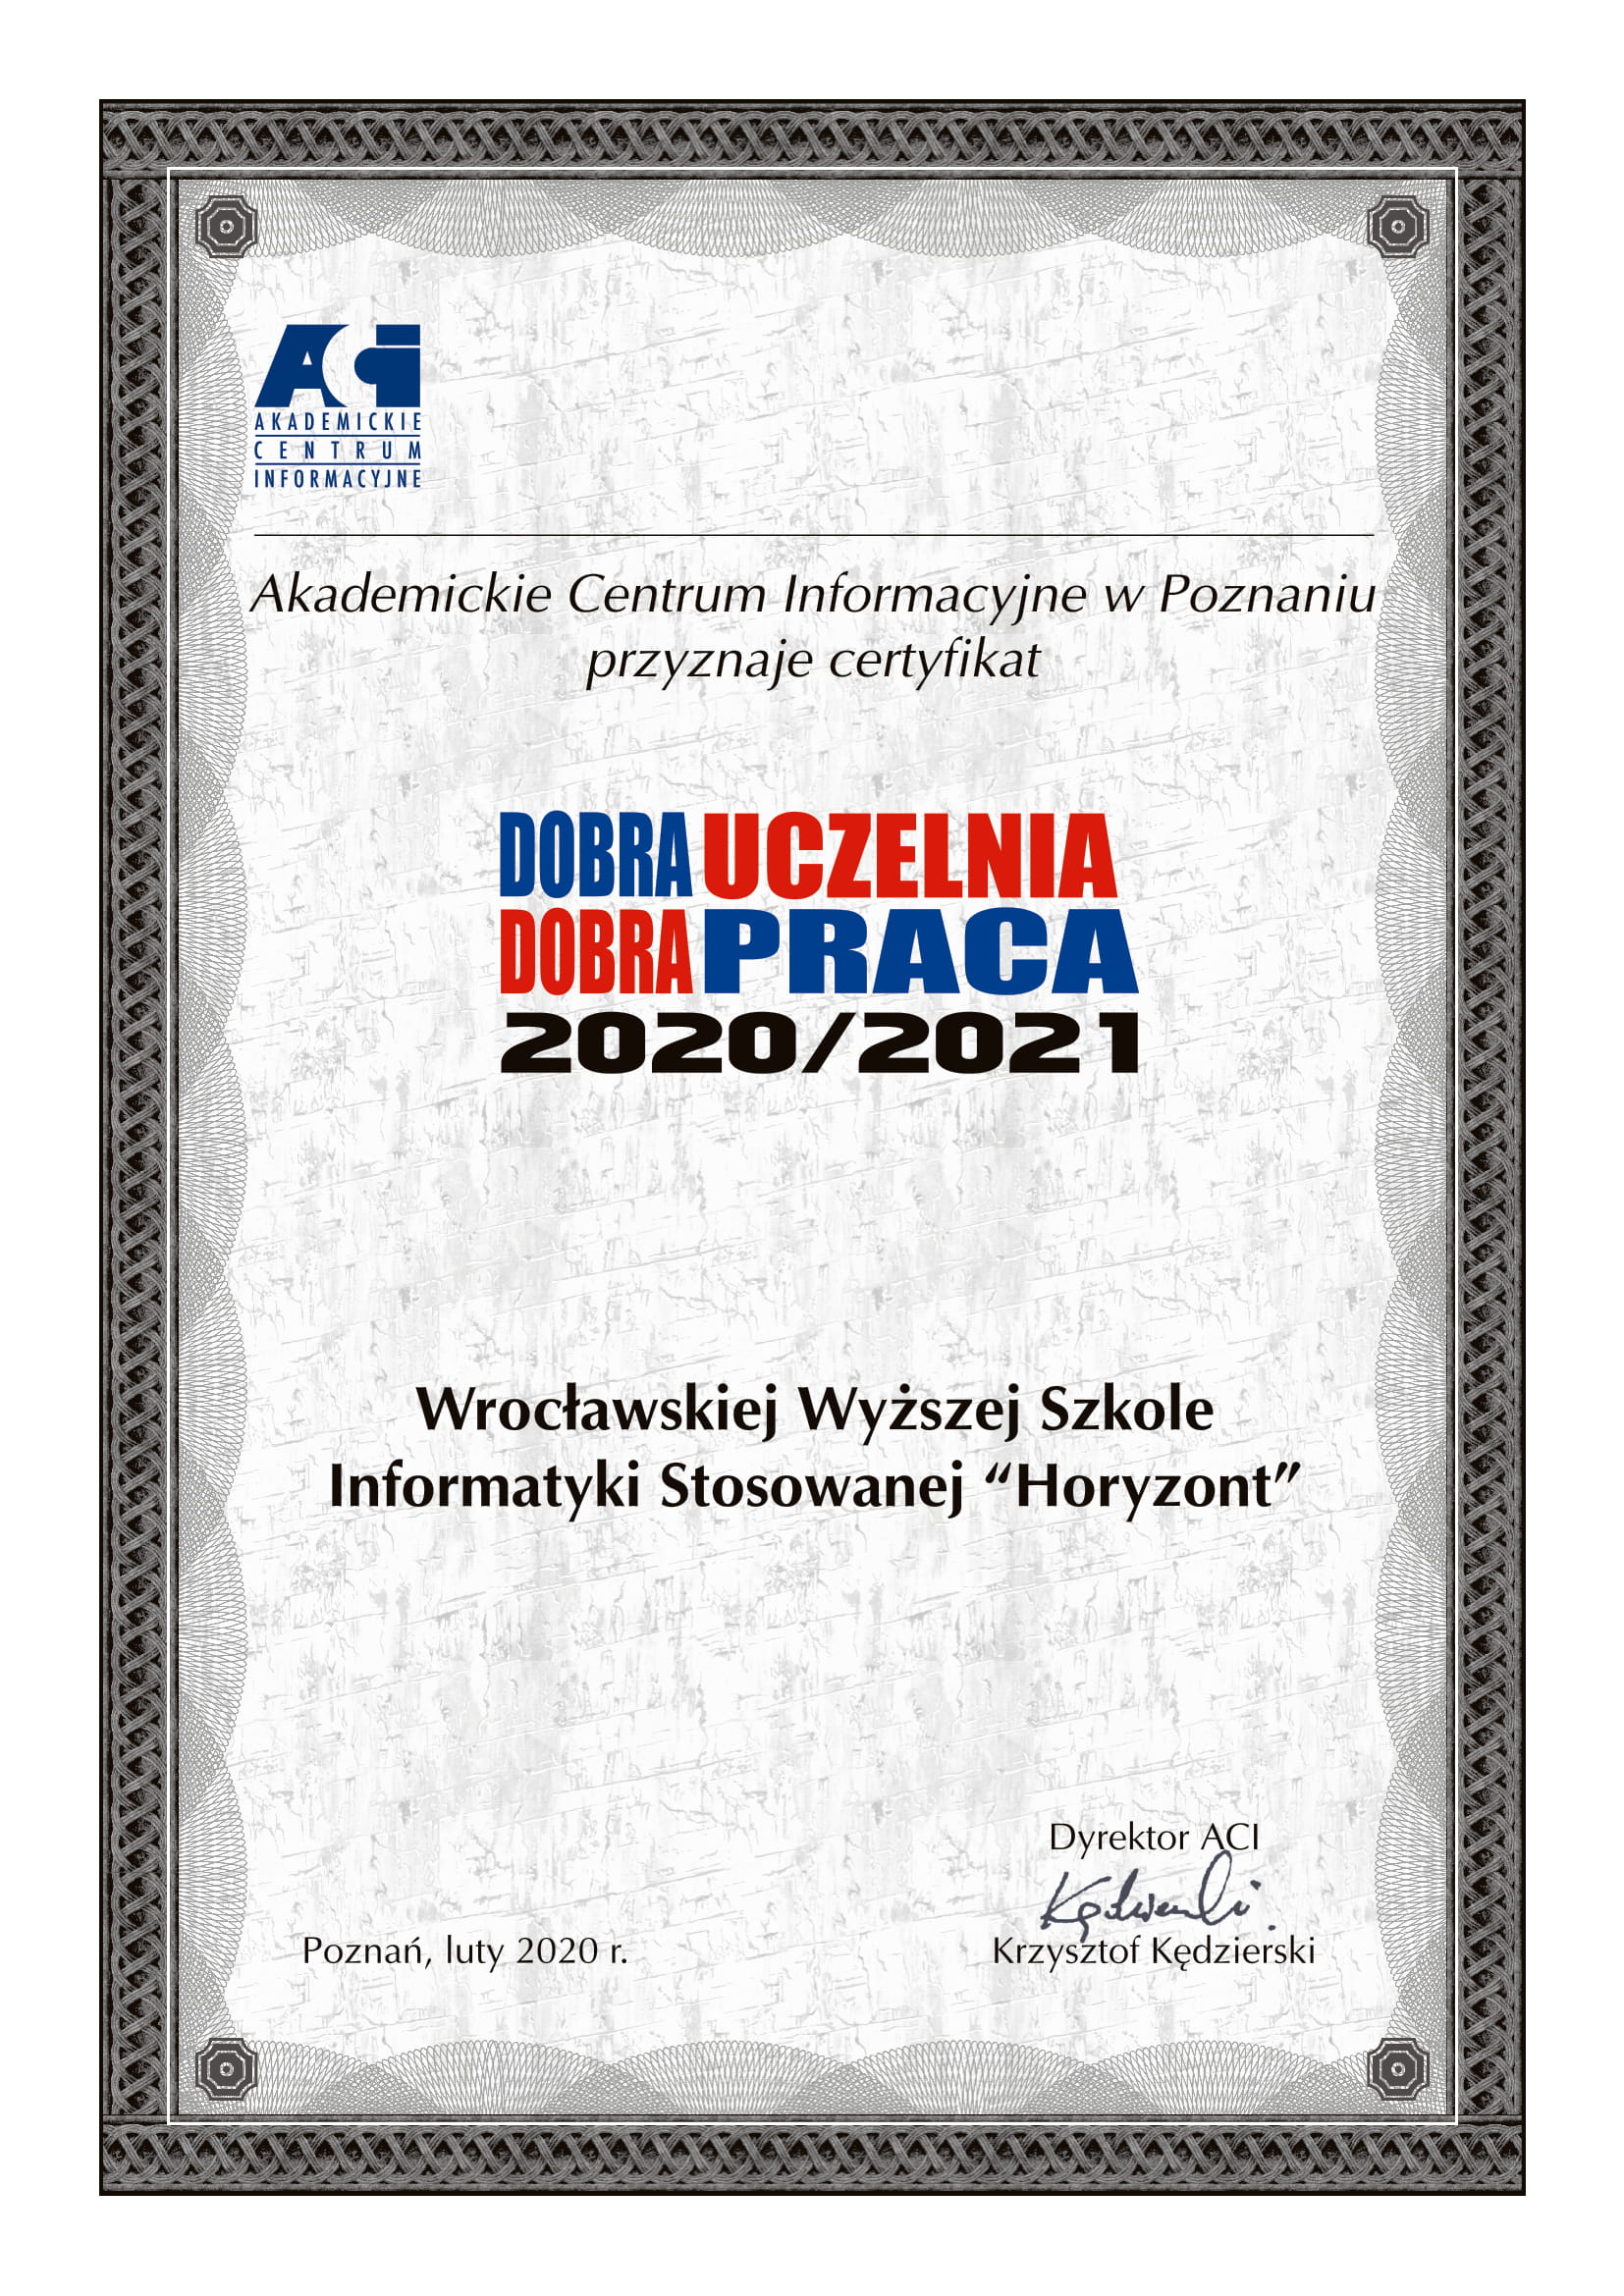 Certyfikat_Dobra_Uczelnia-Dobra_Praca_2020-2021_WWSIS_Horyzont-1